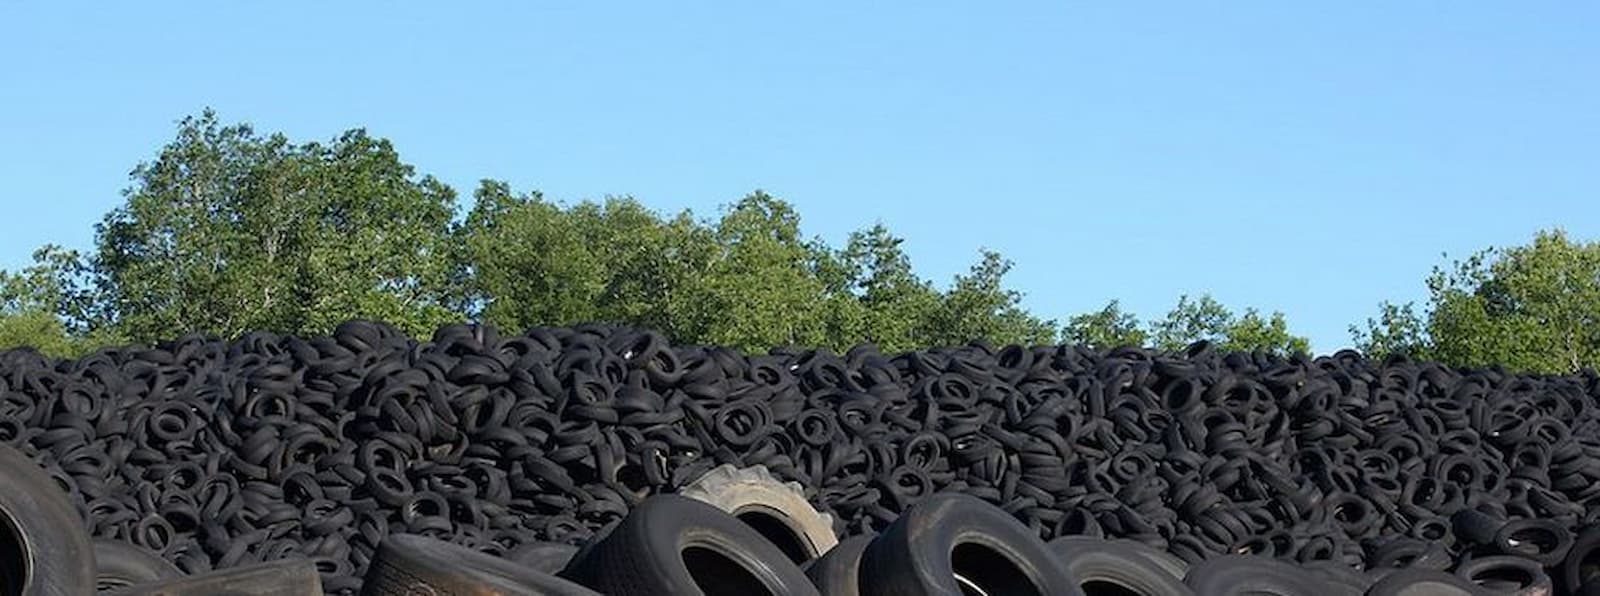 O que são pneus inservíveis e para que servem?